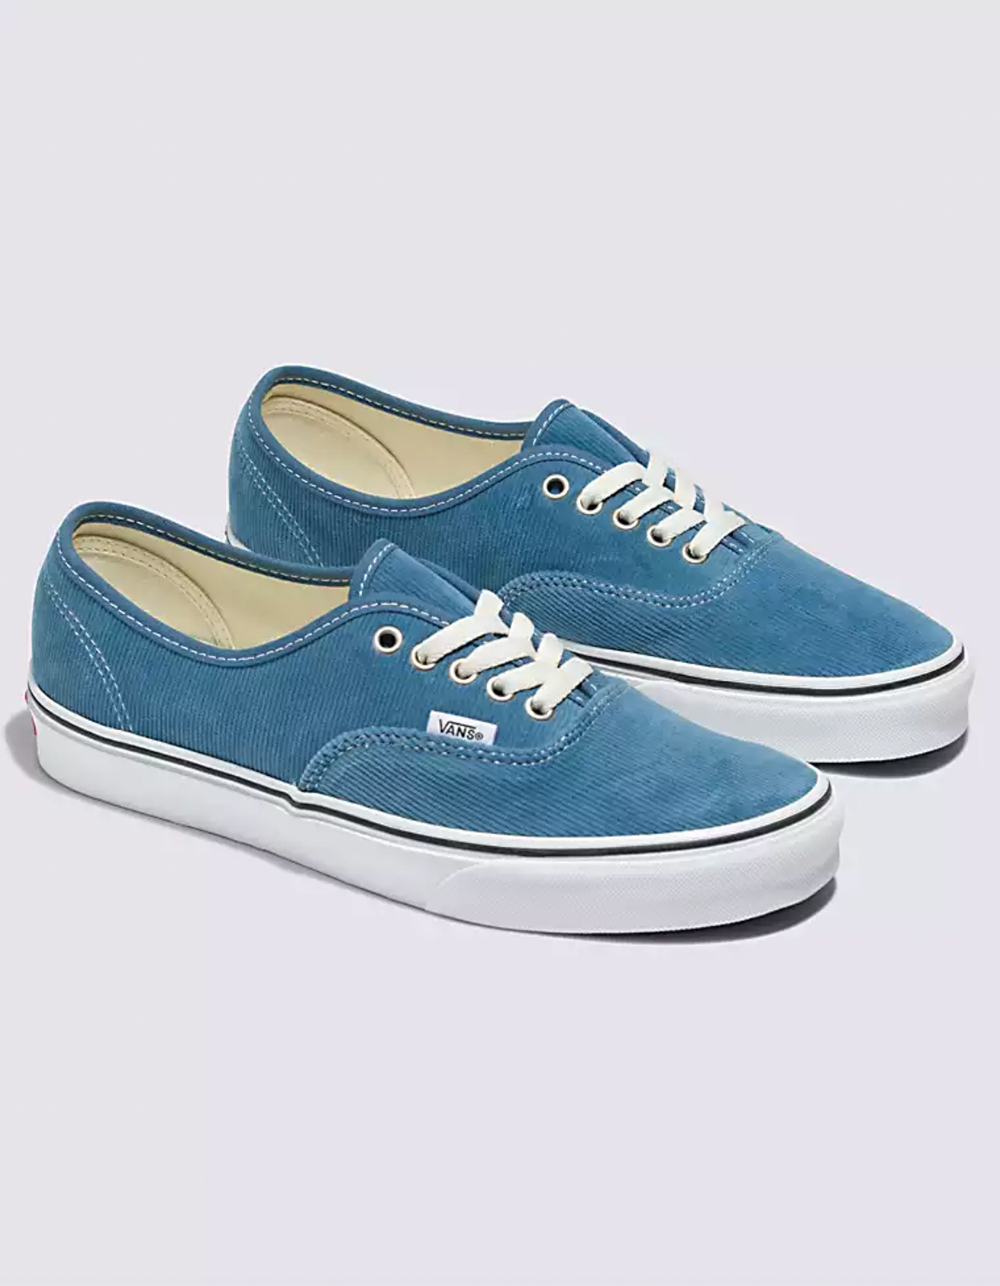 BLUE/WHITE LT Corduroy | VANS Shoes Authentic - Tillys